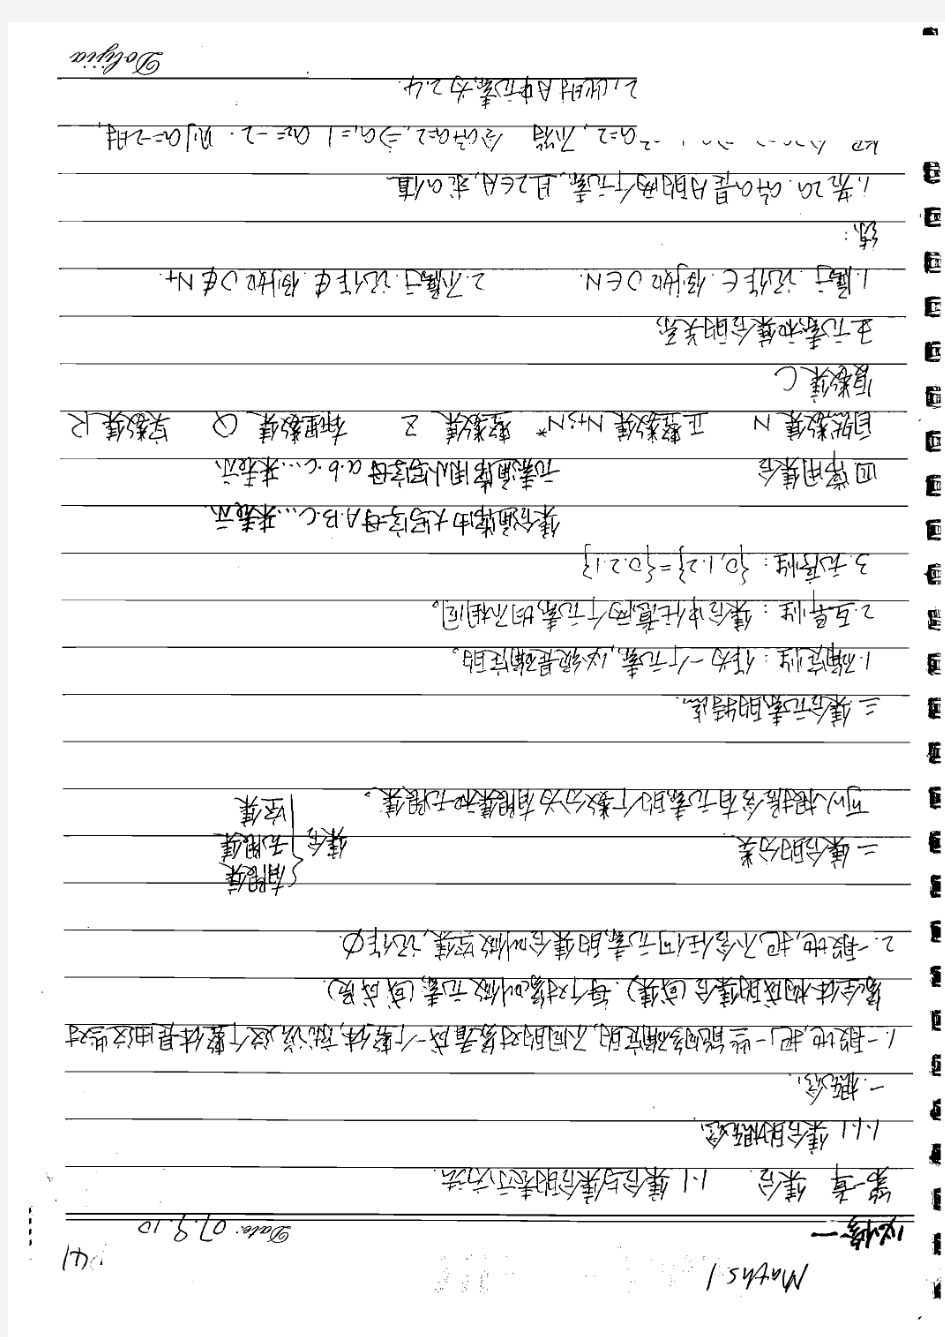 【北京高考状元笔记】人大附中高中部学霸的数学笔记-清晰手写体-模块1必修1部分共82页